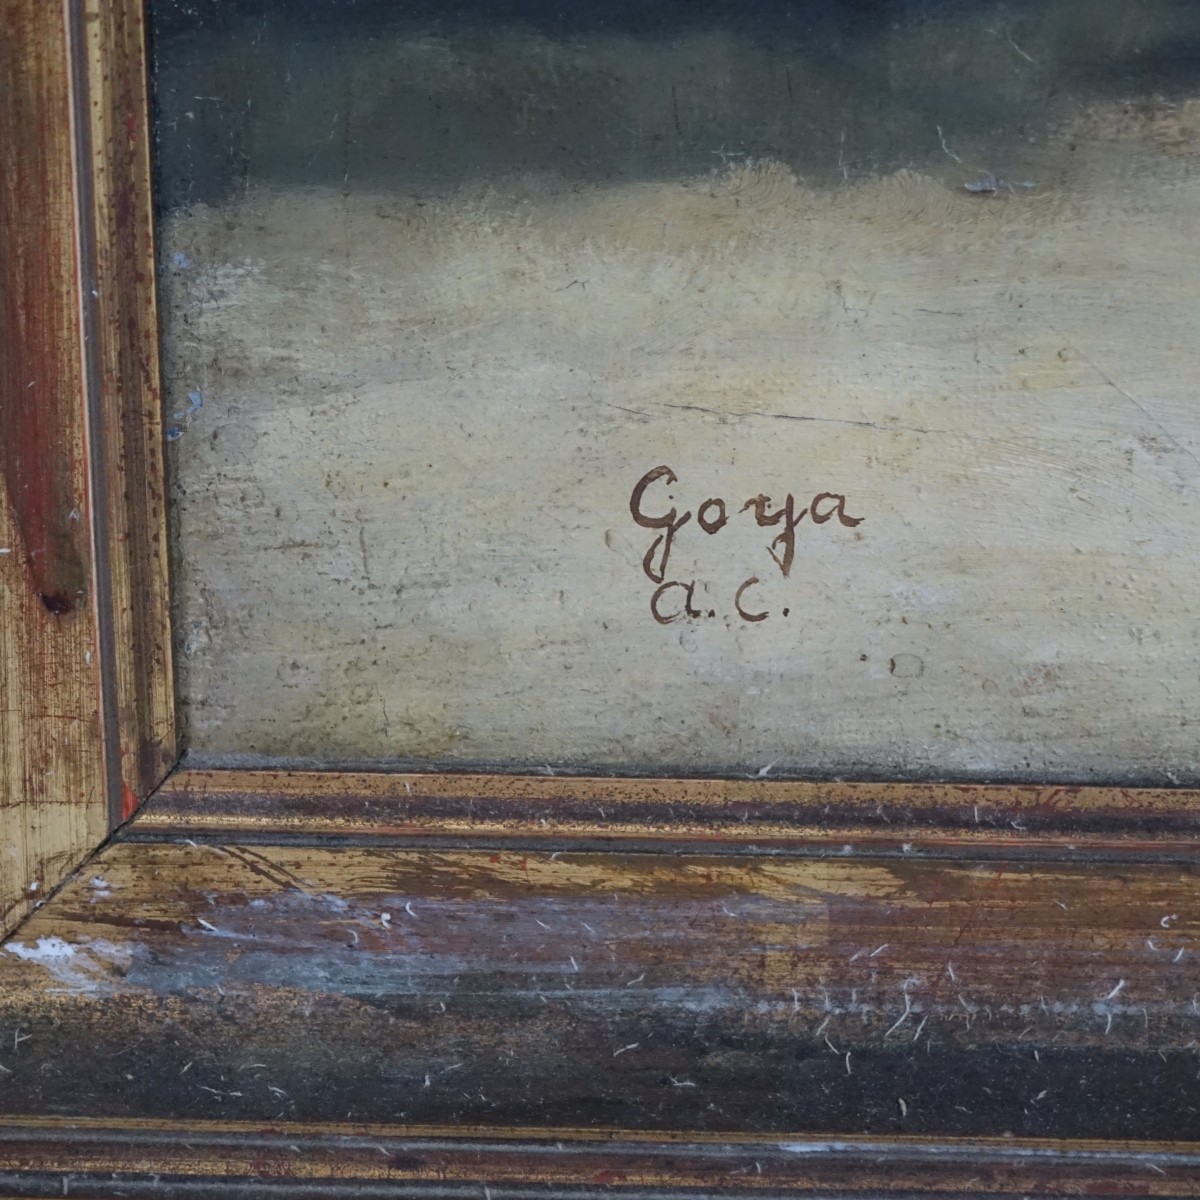 After: Francisco Goya (1746 - 1828)